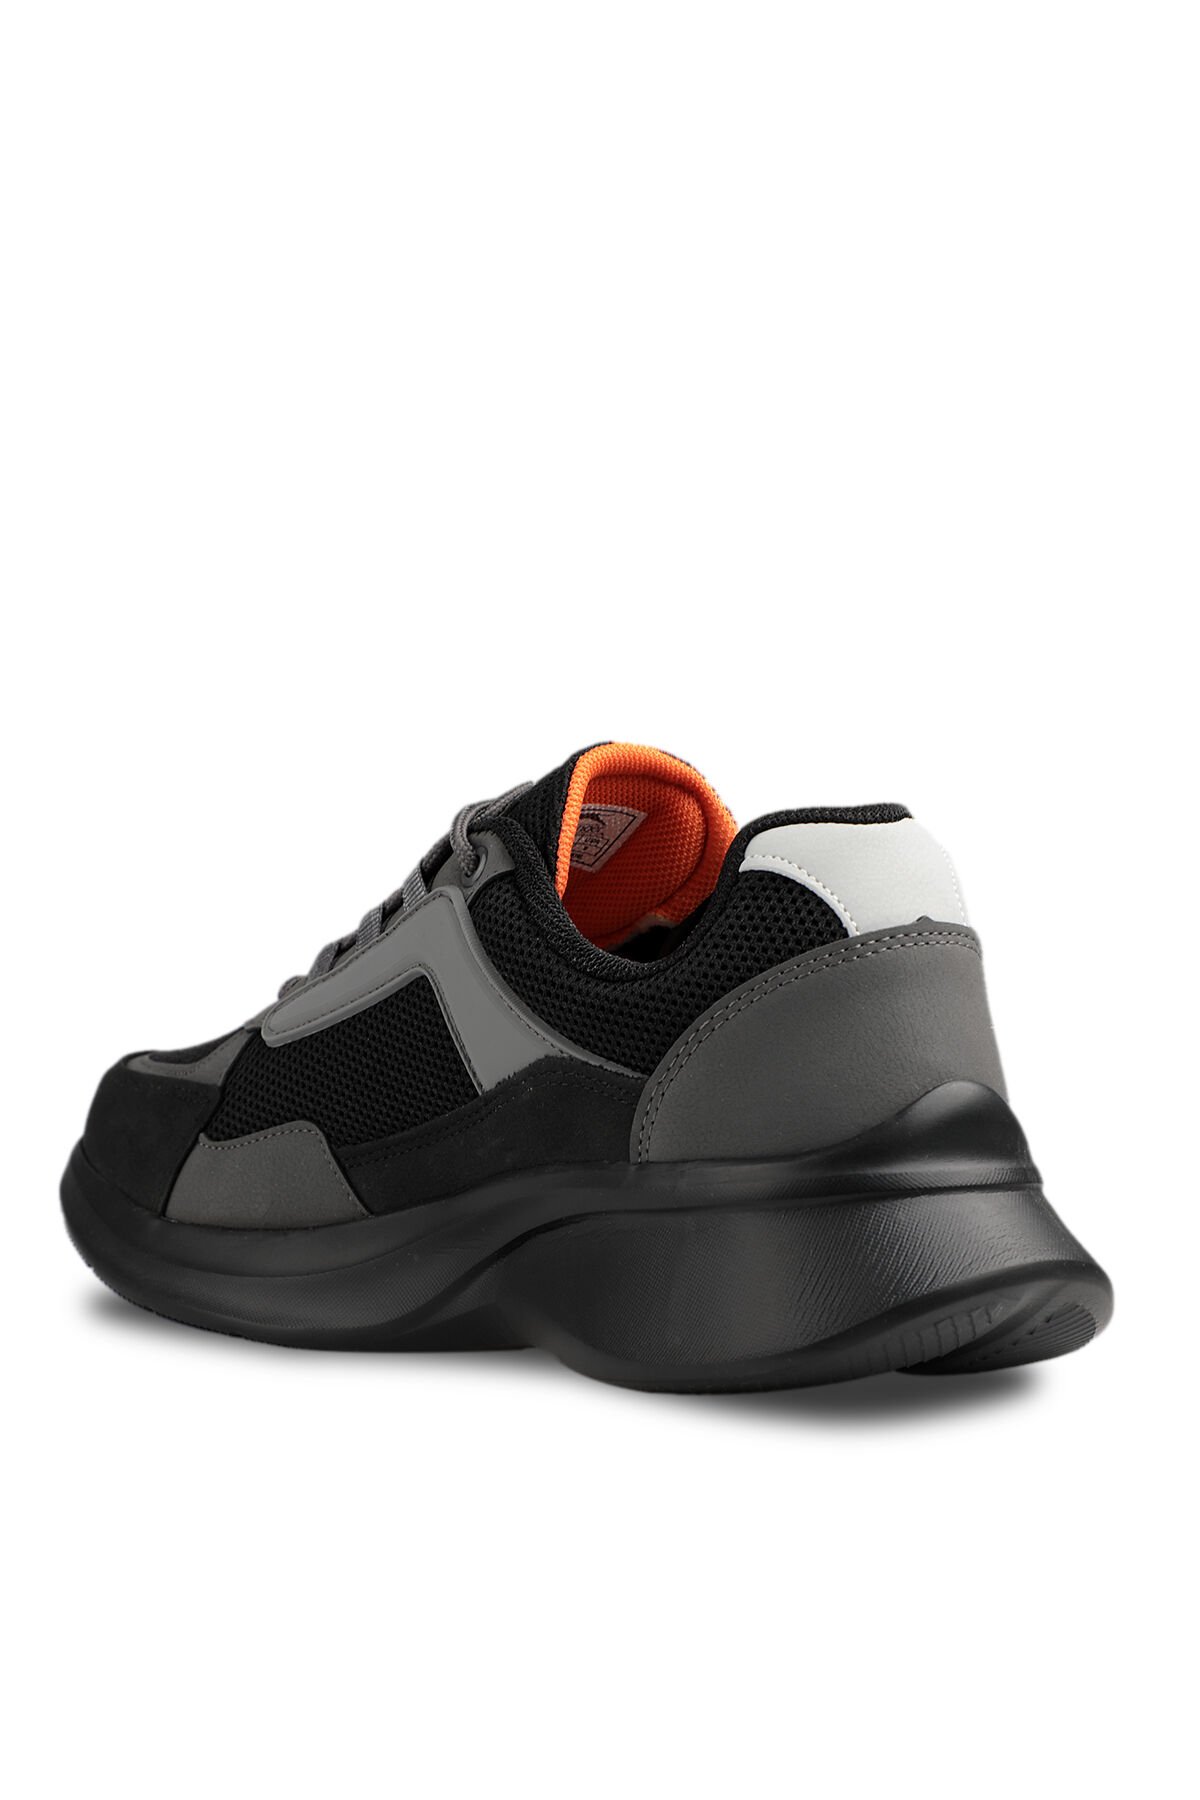 Slazenger ZODYAK I Sneaker Erkek Ayakkabı Siyah / Koyu Gri - Thumbnail